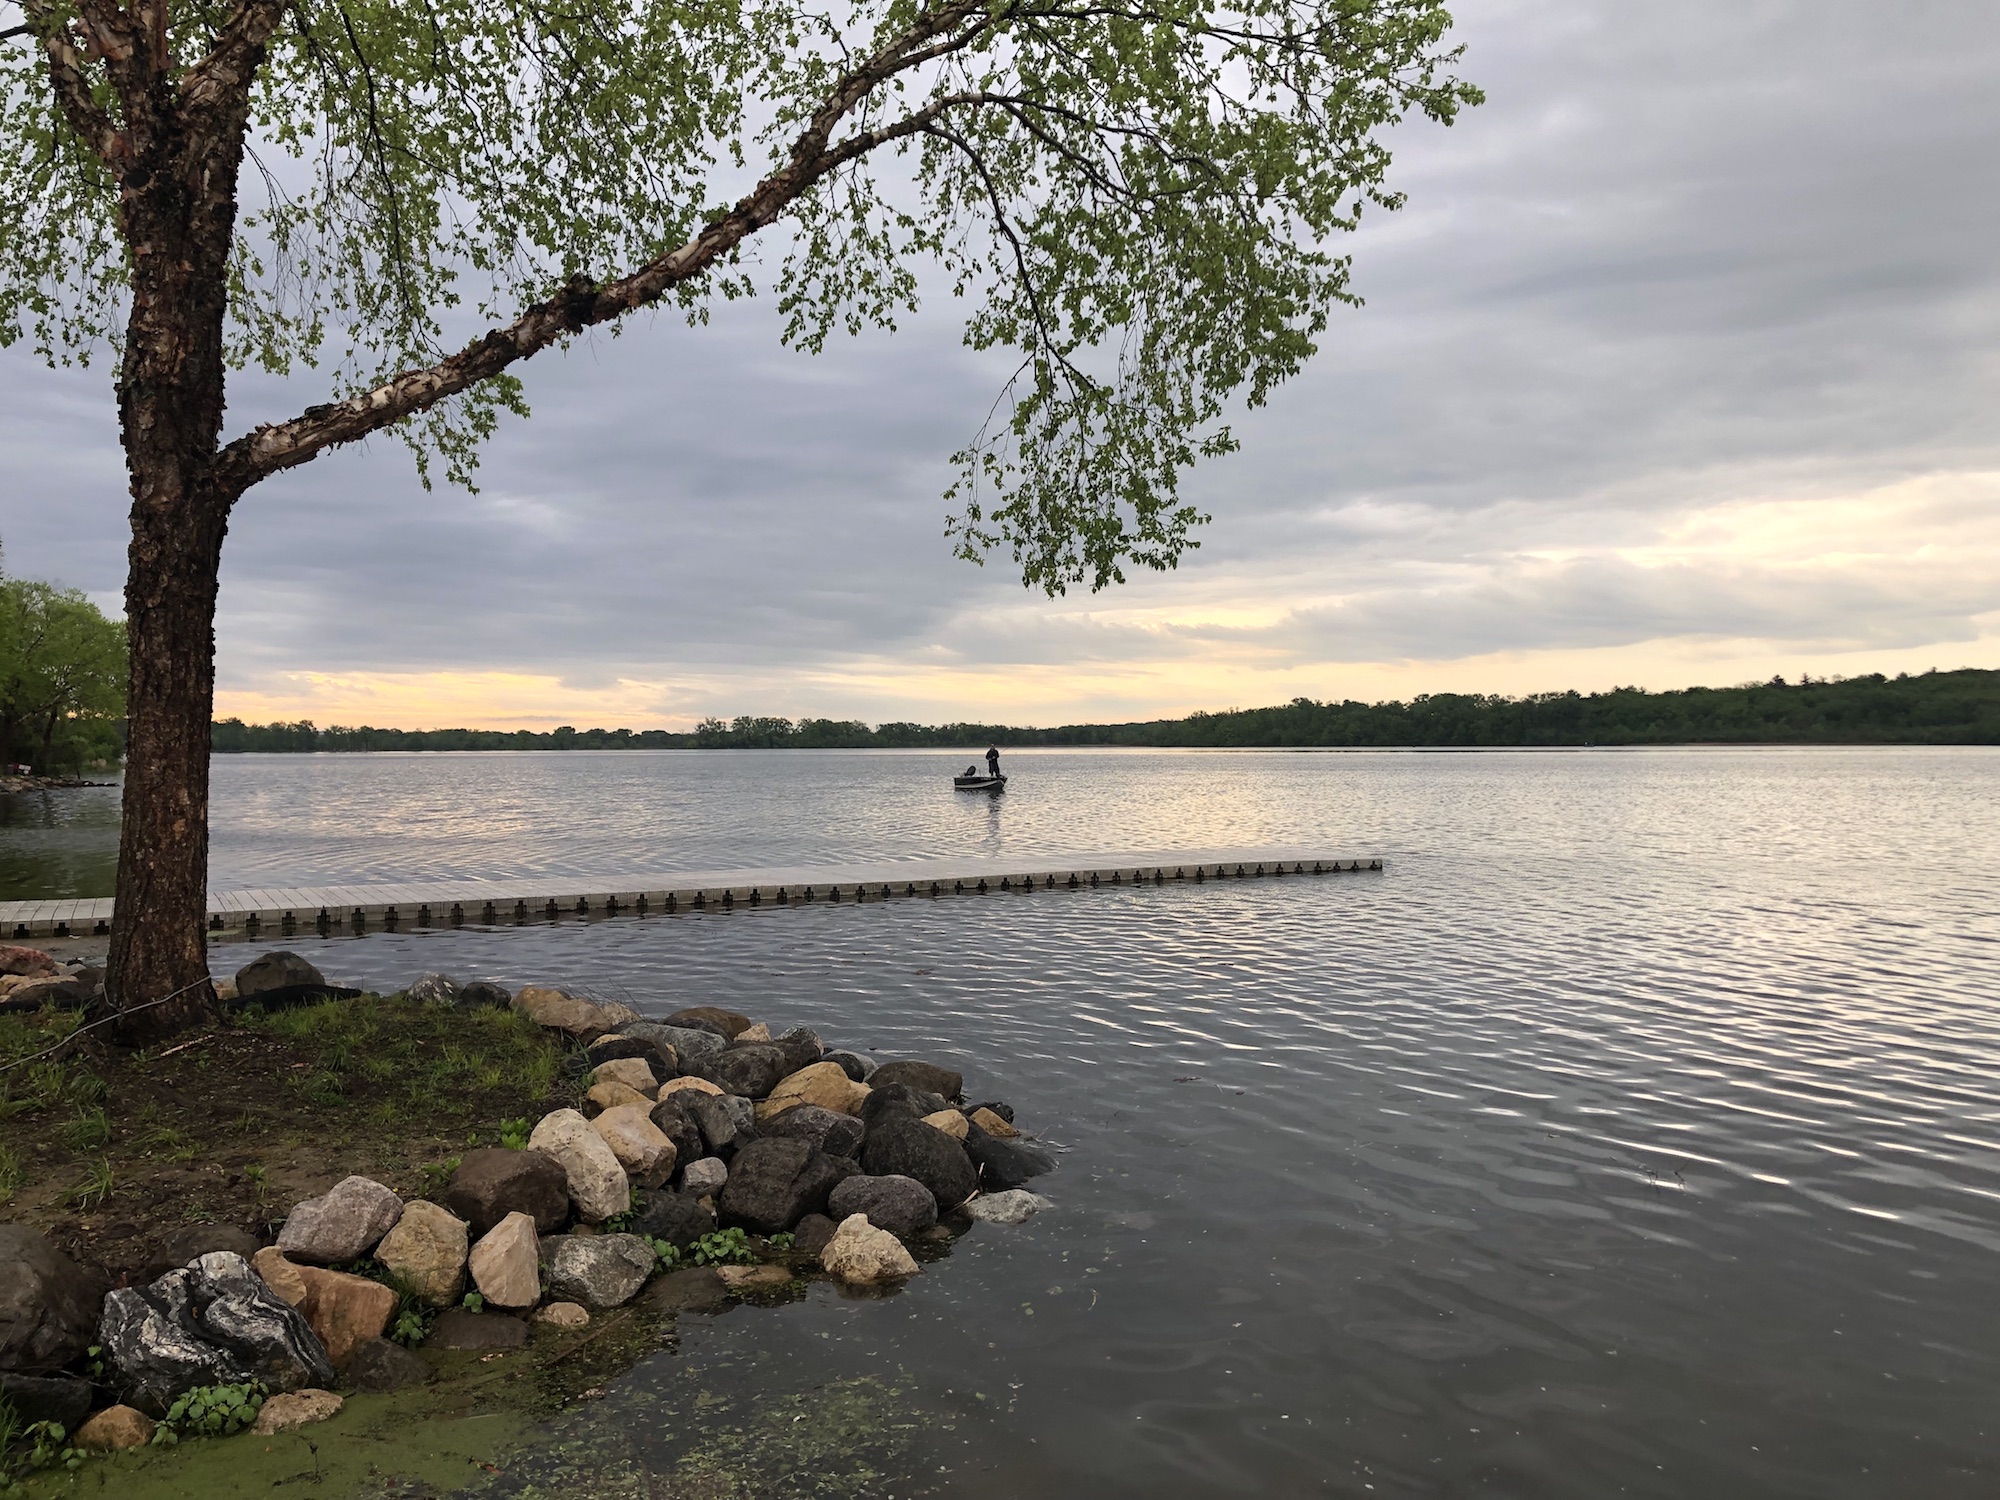 Lake Wingra on May 27, 2019.